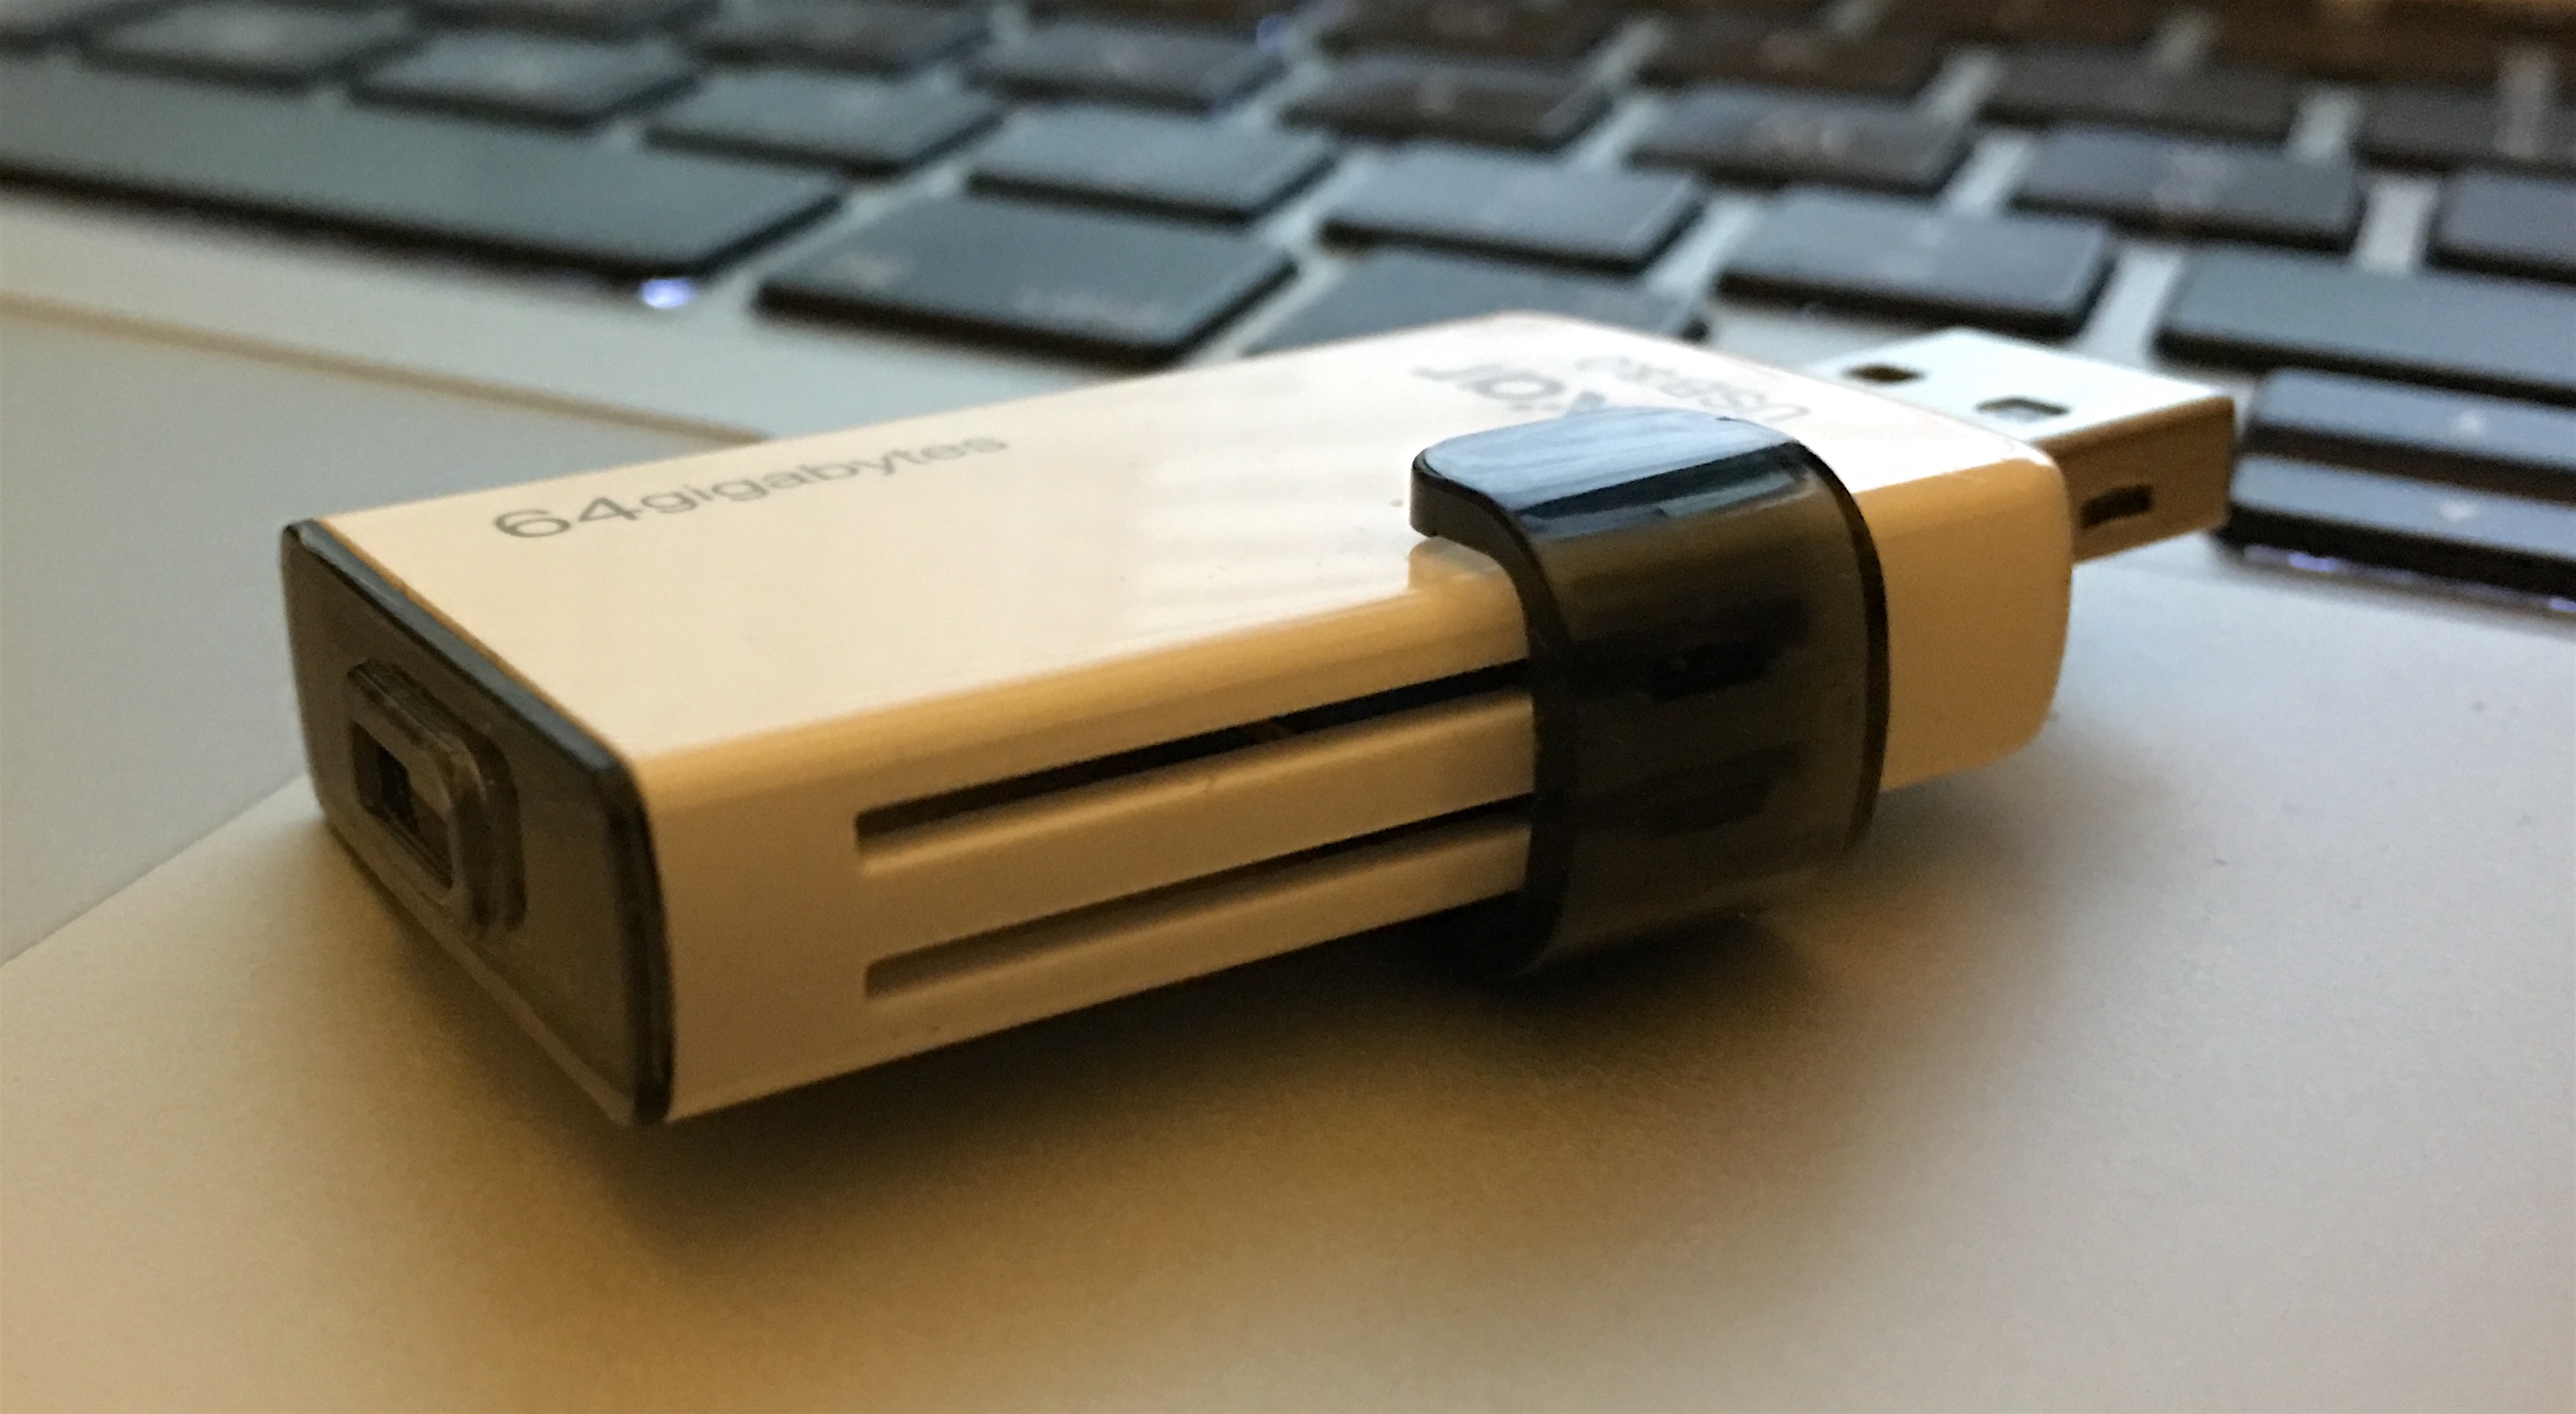 Test de la clé USB iPhone/iPad déguisée en câble de recharge : Lexar  JumpDrive C20i